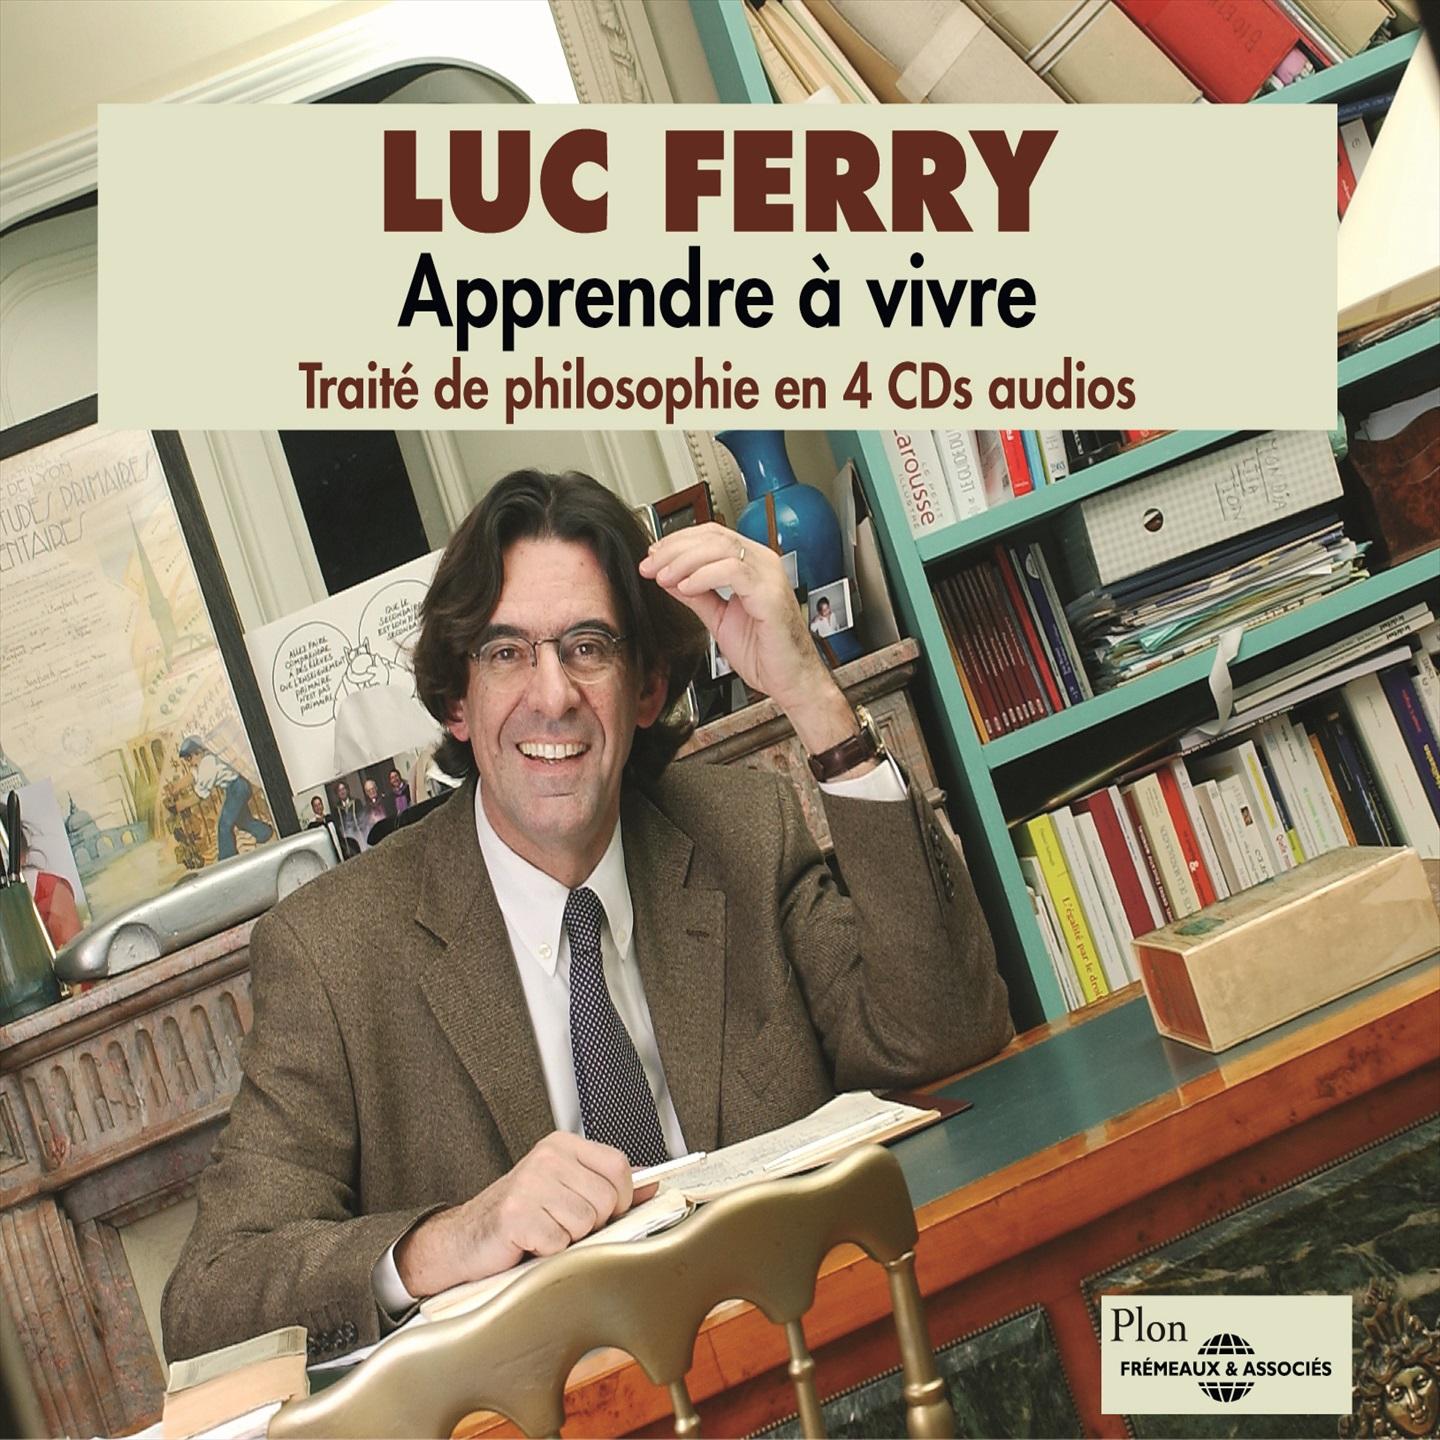 Luc Ferry : Apprendre a vivre Traite de philosophie